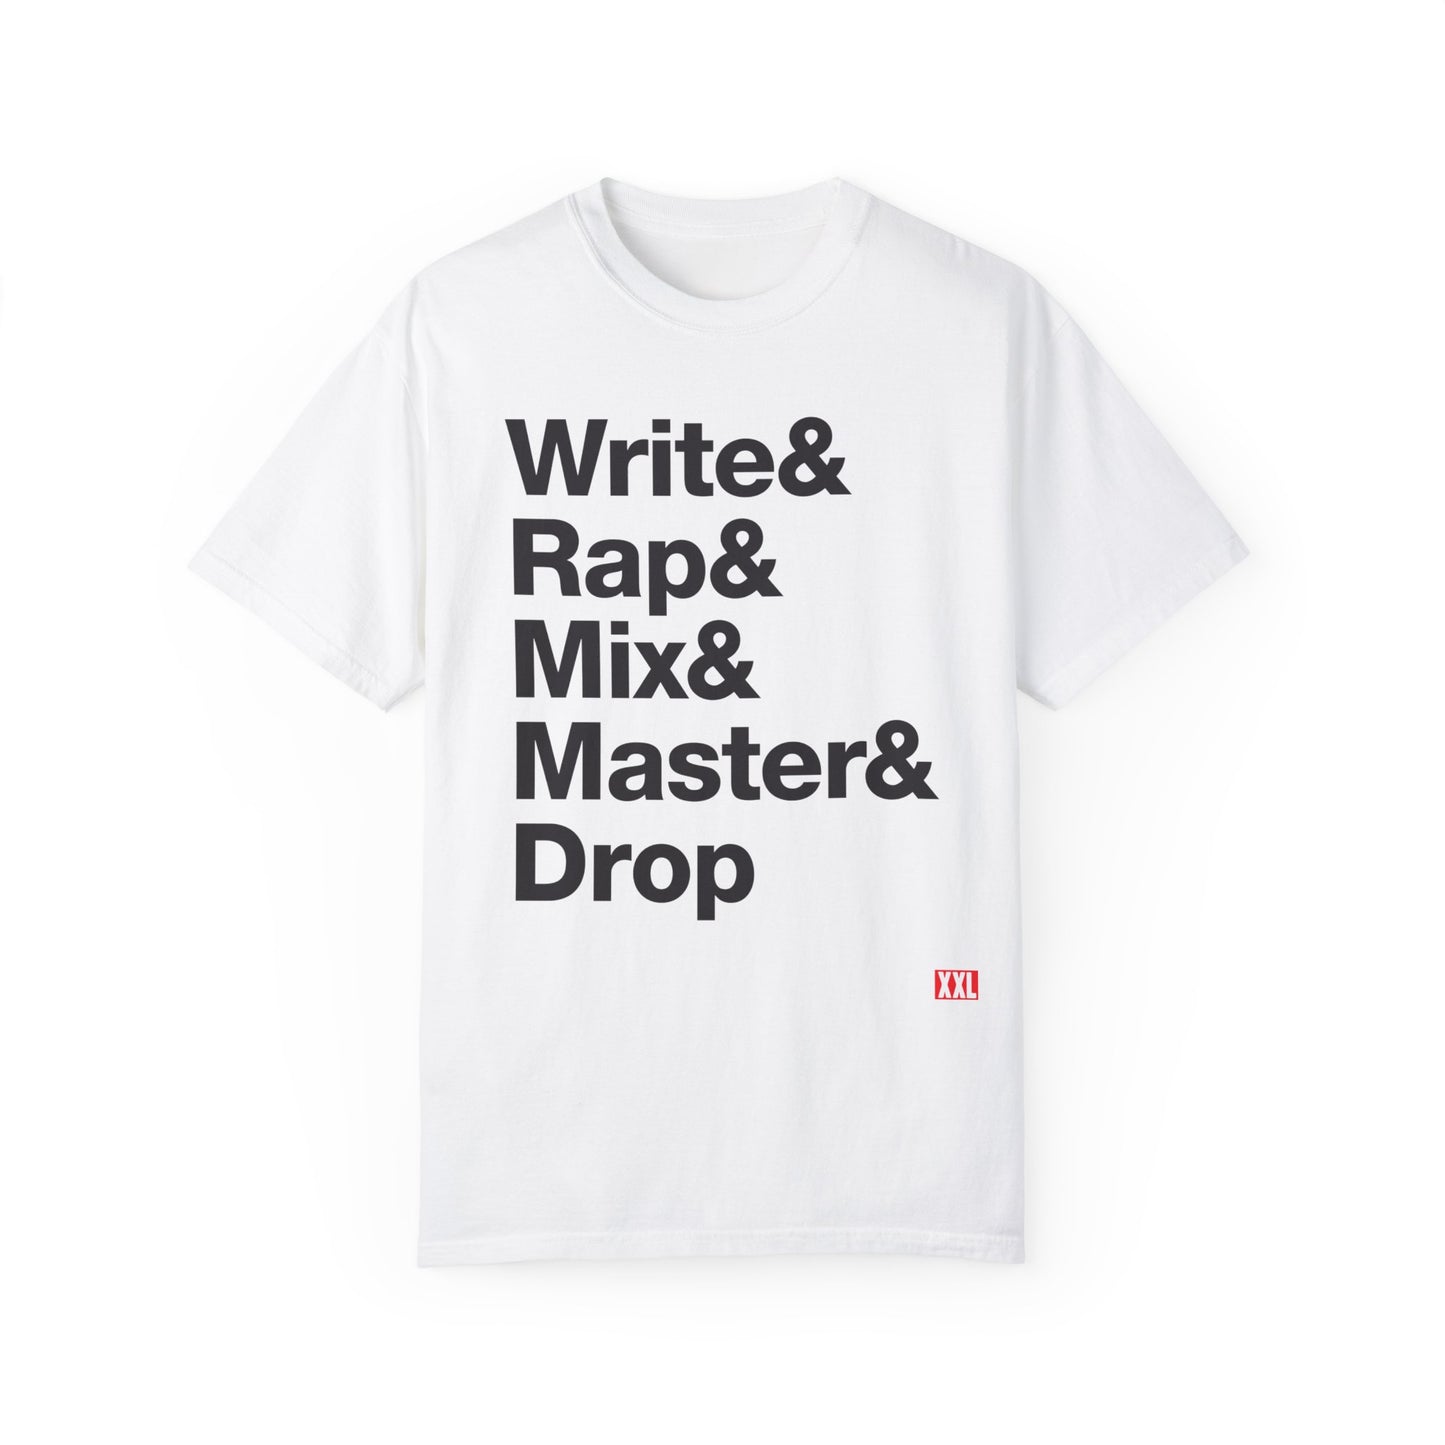 Write & Rap T-Shirt